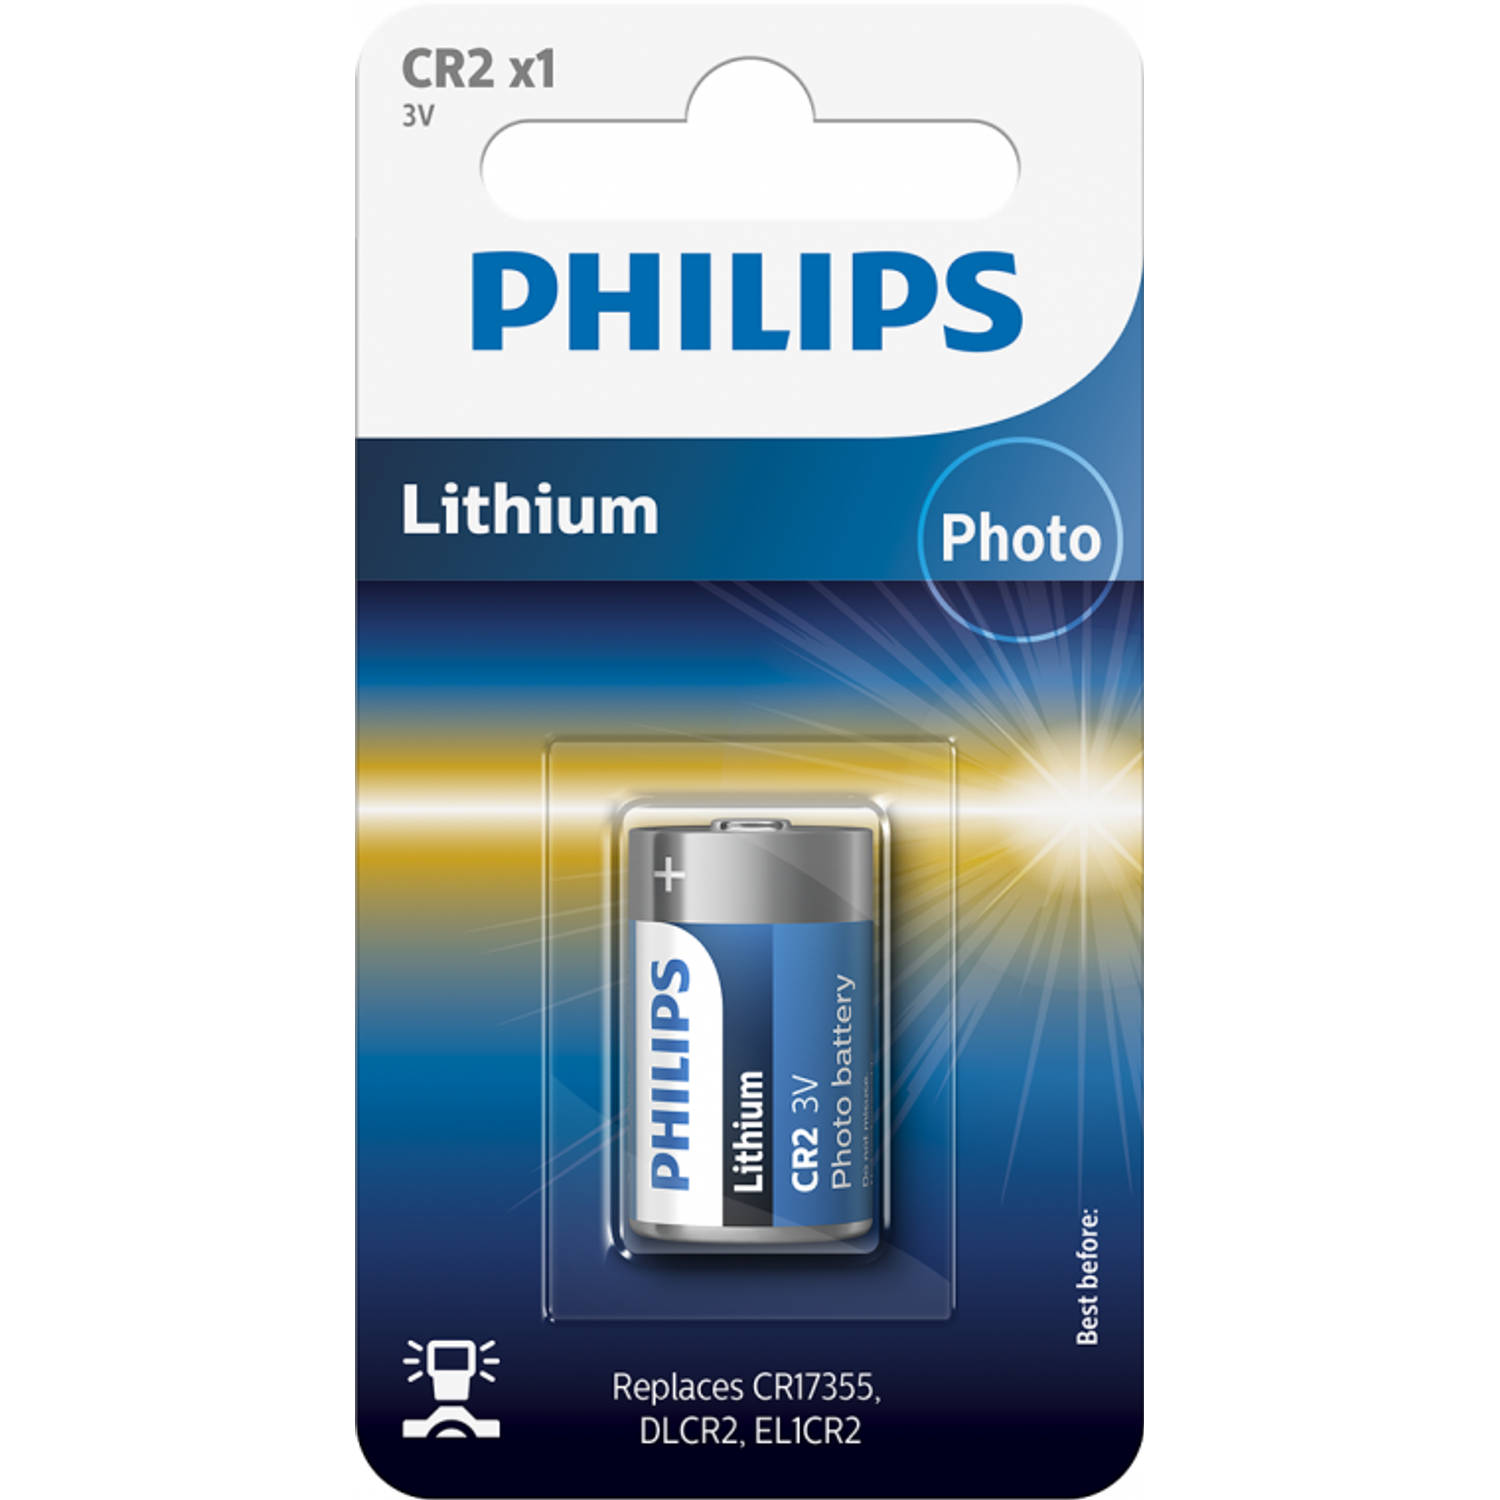 Philips Lithium CR2 3V blister 1